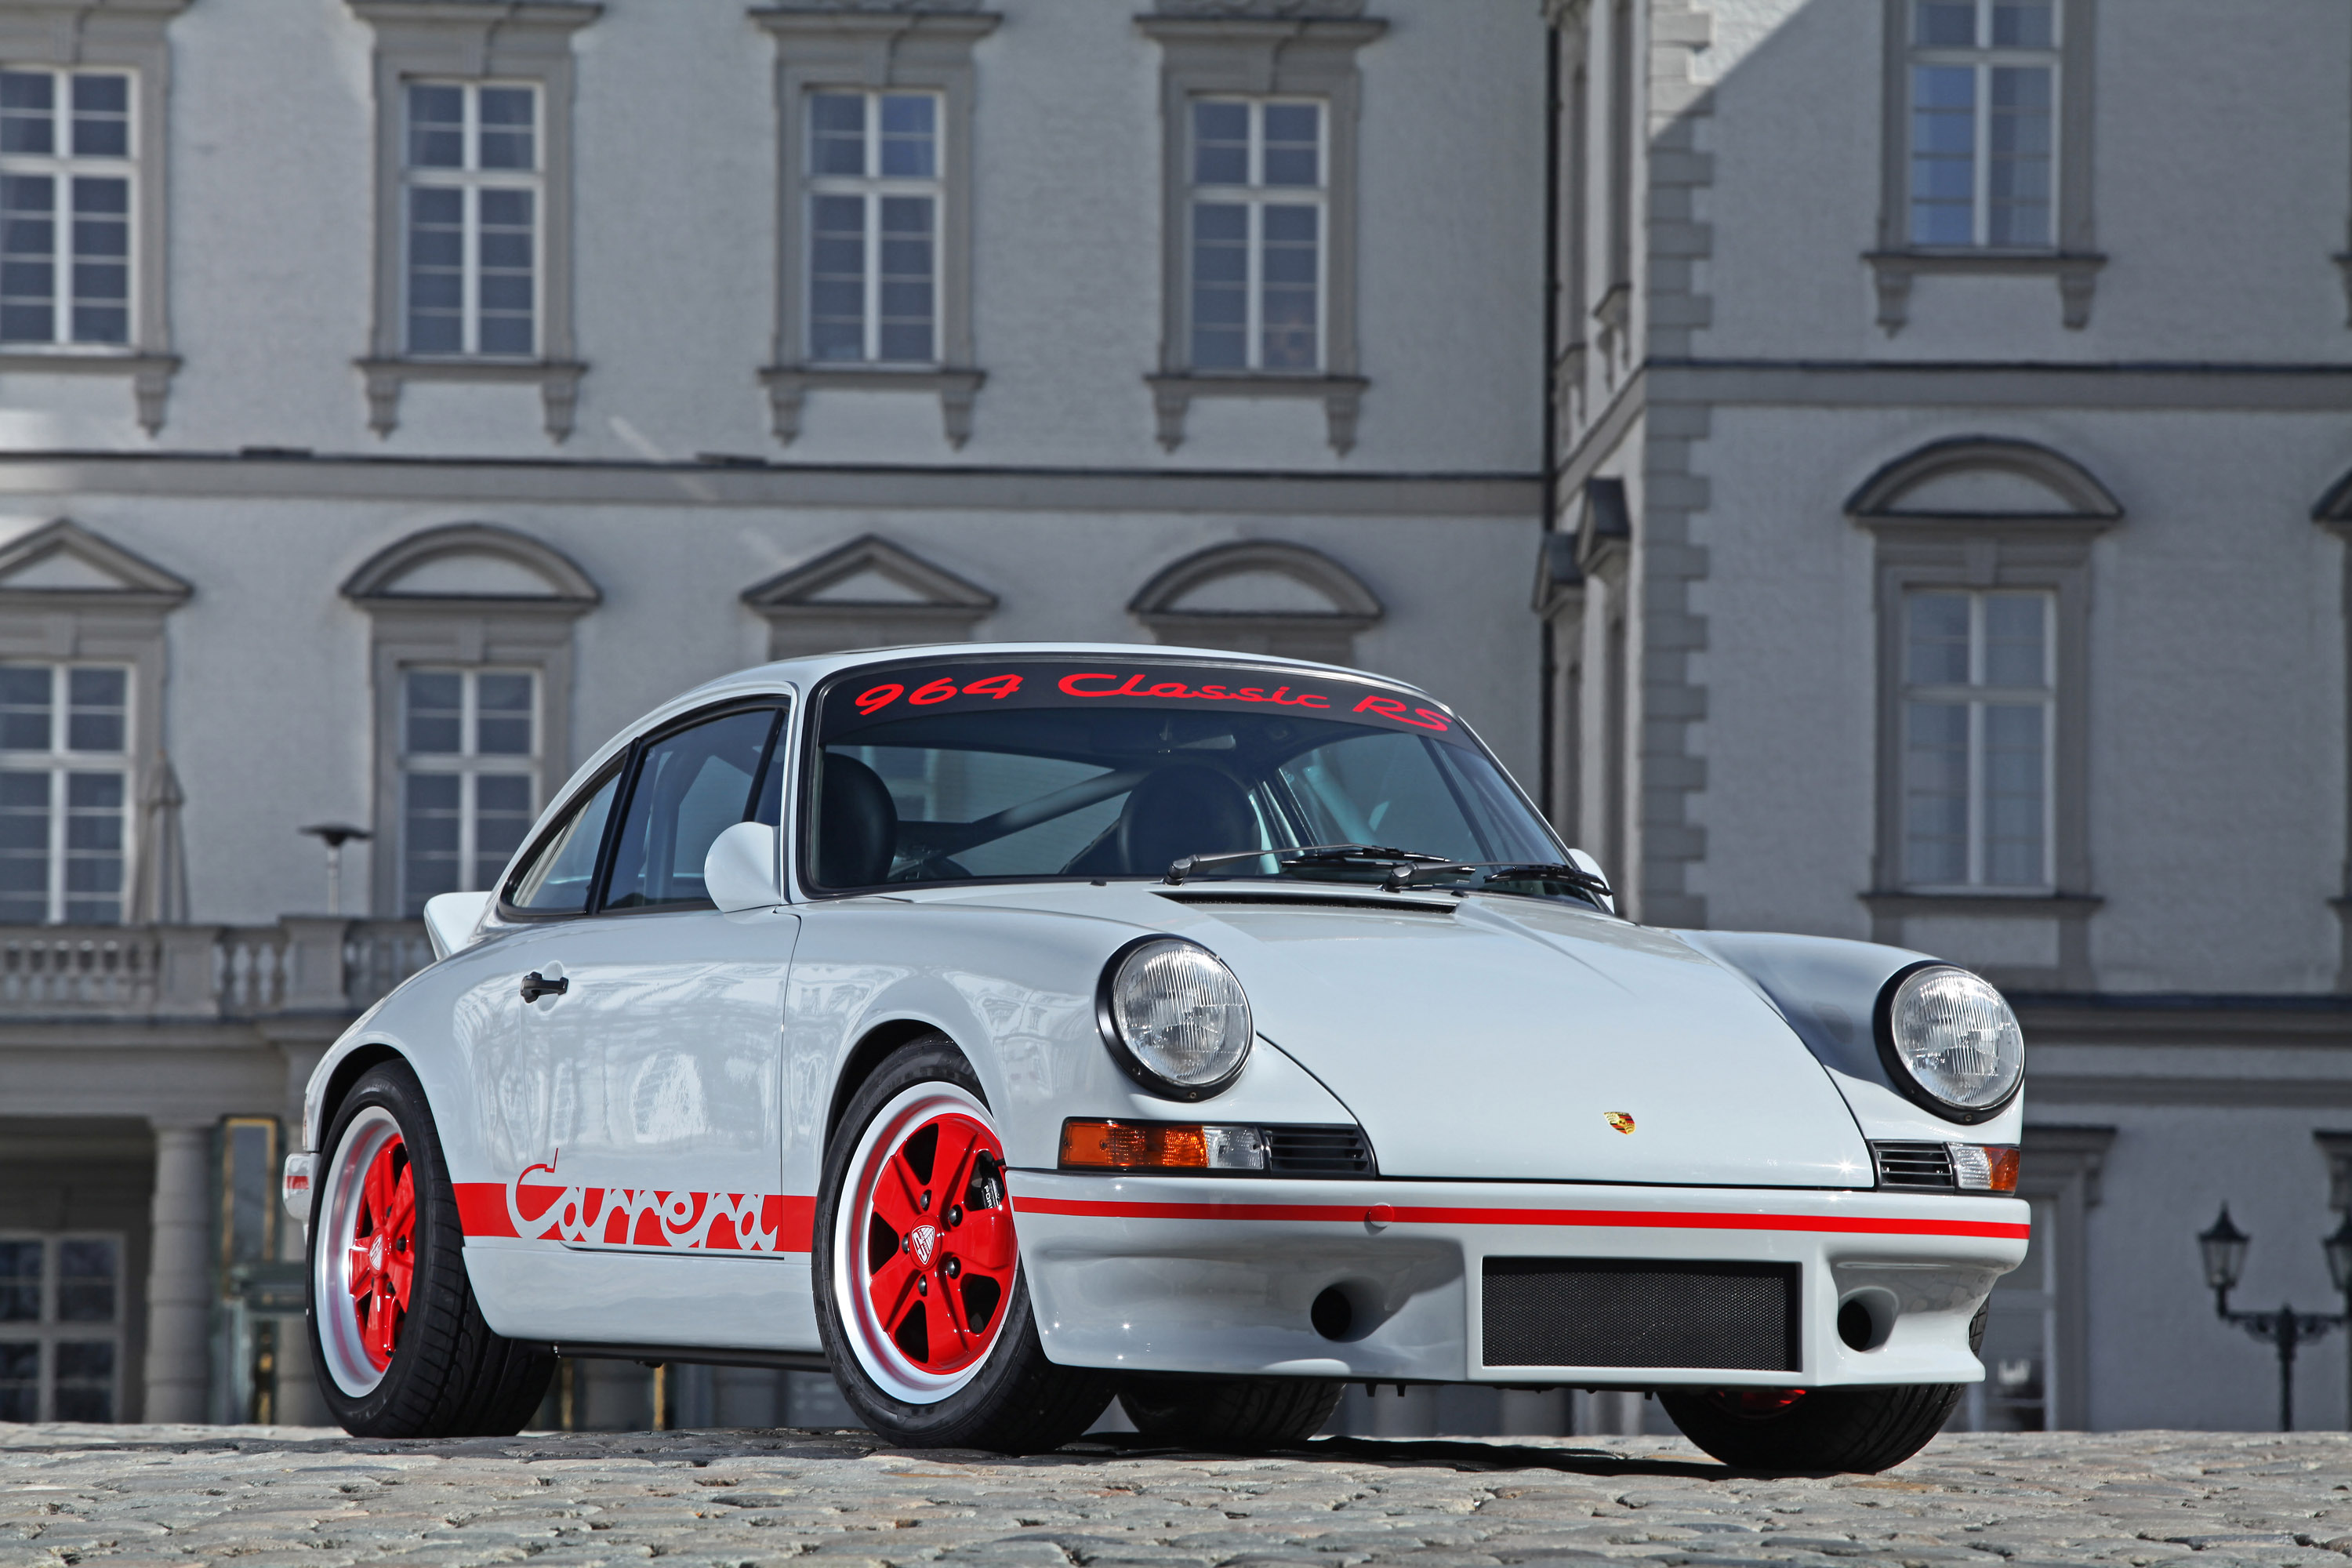 2013, Dp motorsport, Porsche, 964, Rs, Tuning Wallpaper